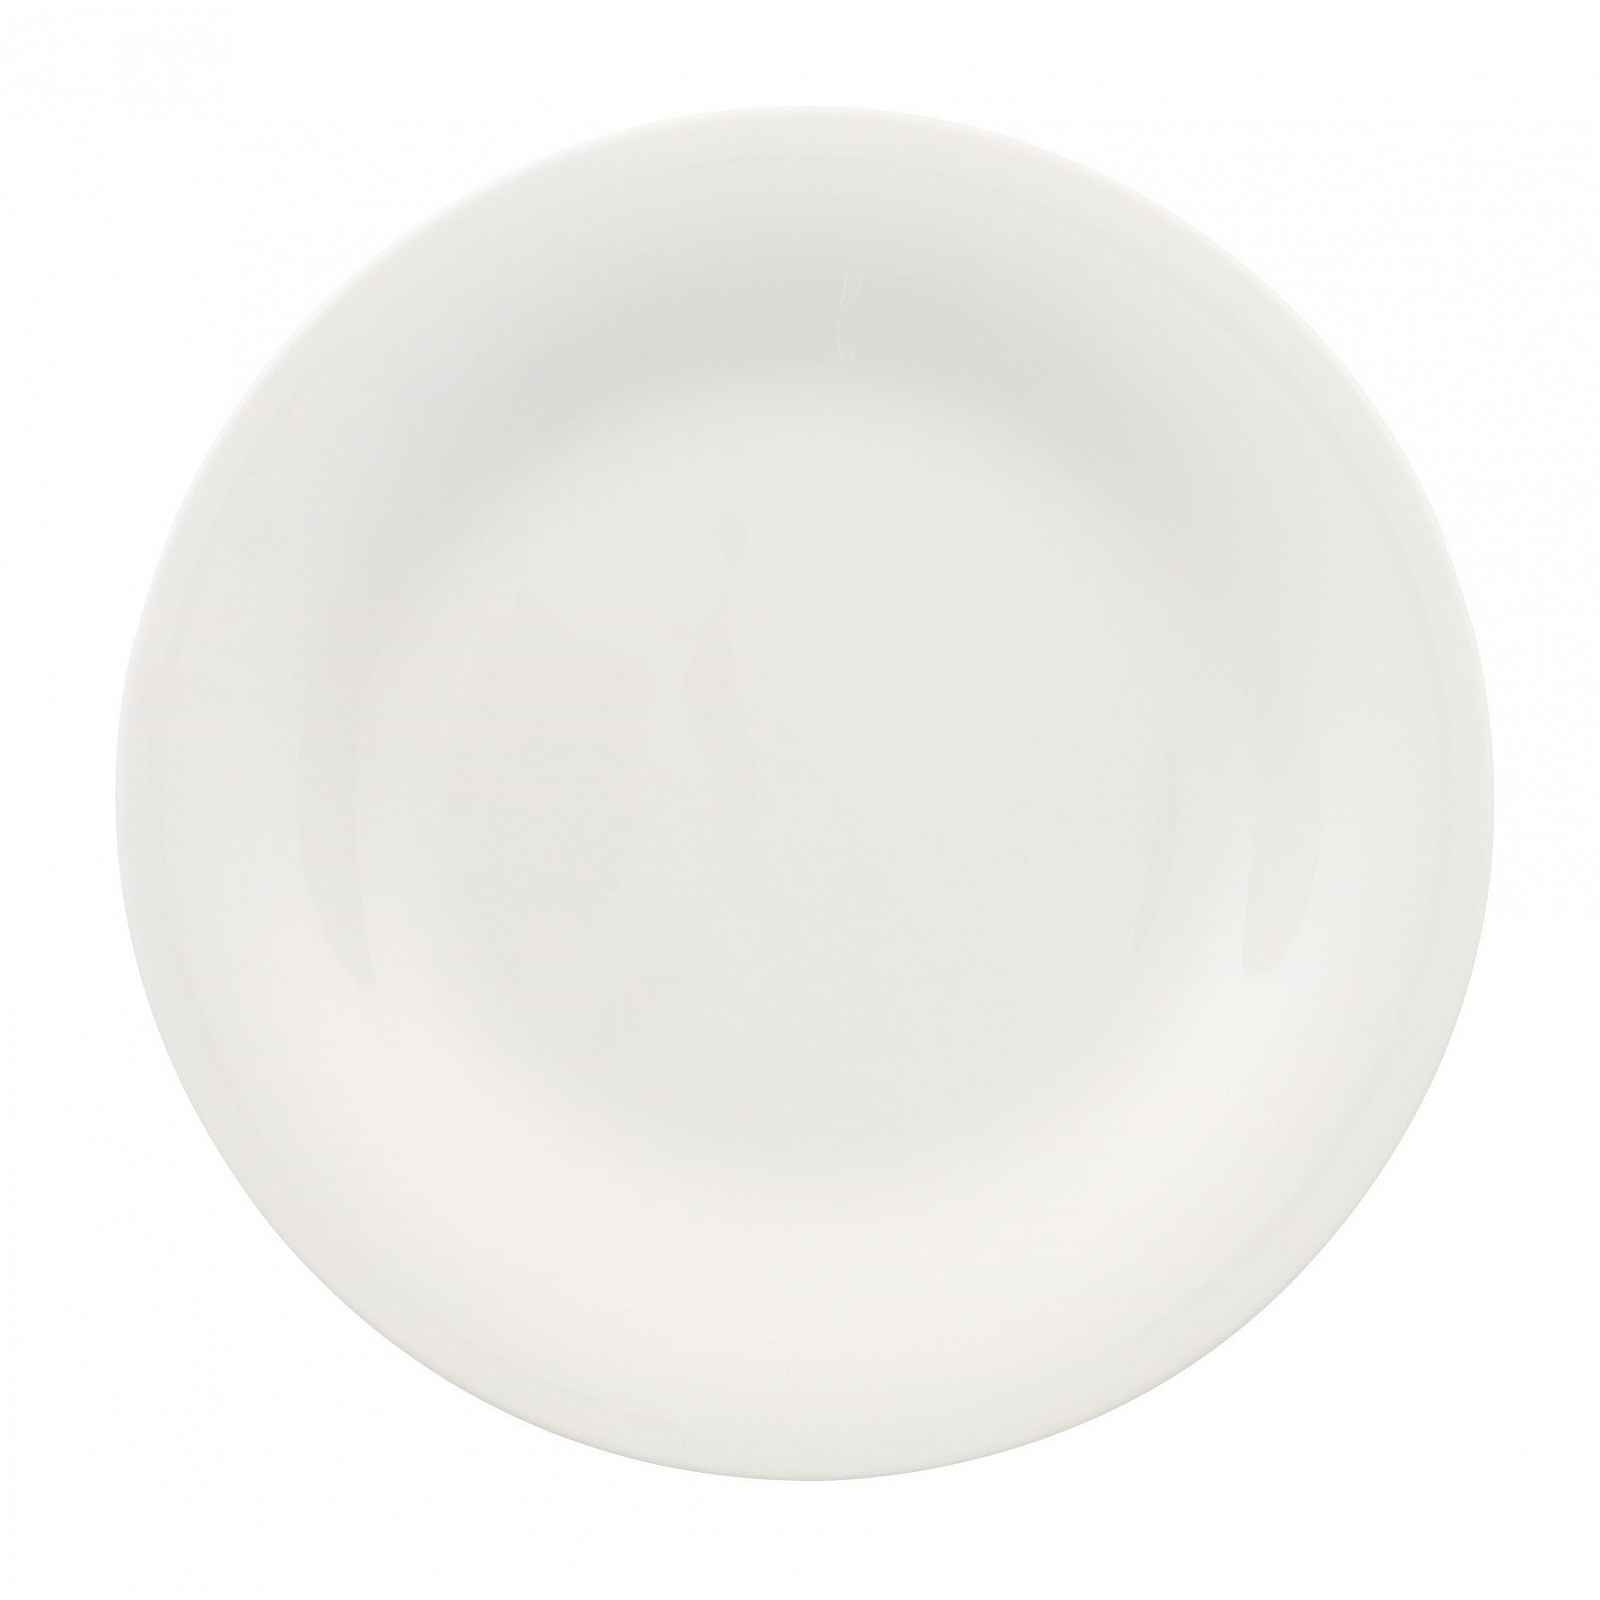 Bílý porcelánový dezertní talíř Villeroy & Boch New Cottage, ⌀ 21 cm